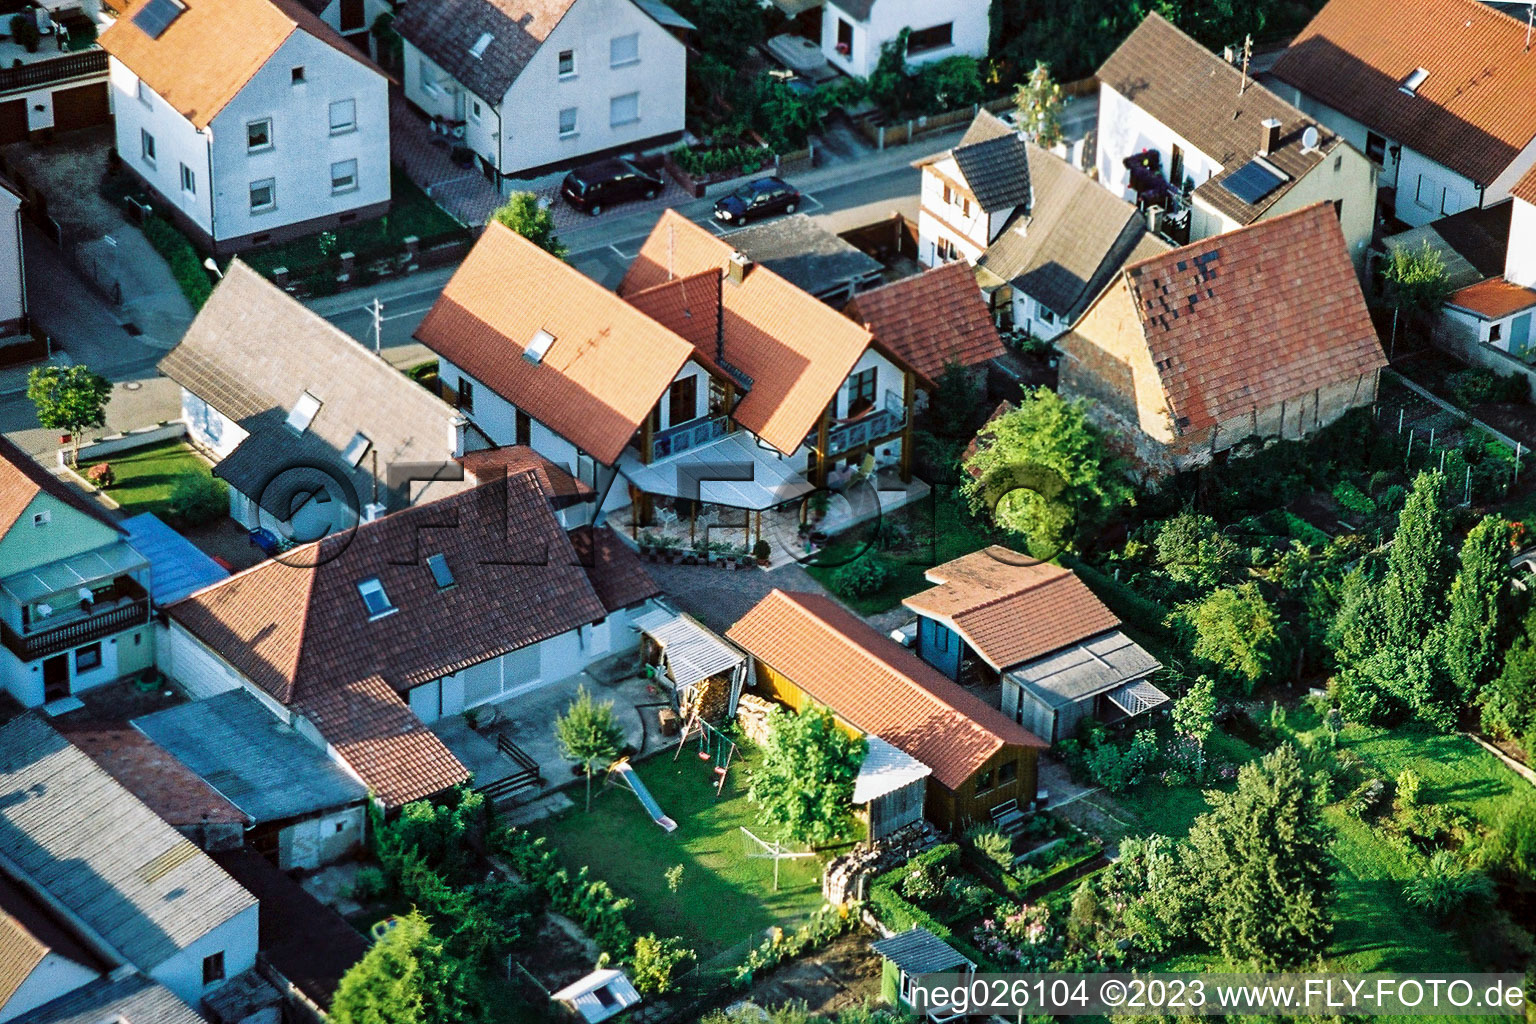 Gänsried à Freckenfeld dans le département Rhénanie-Palatinat, Allemagne vu d'un drone